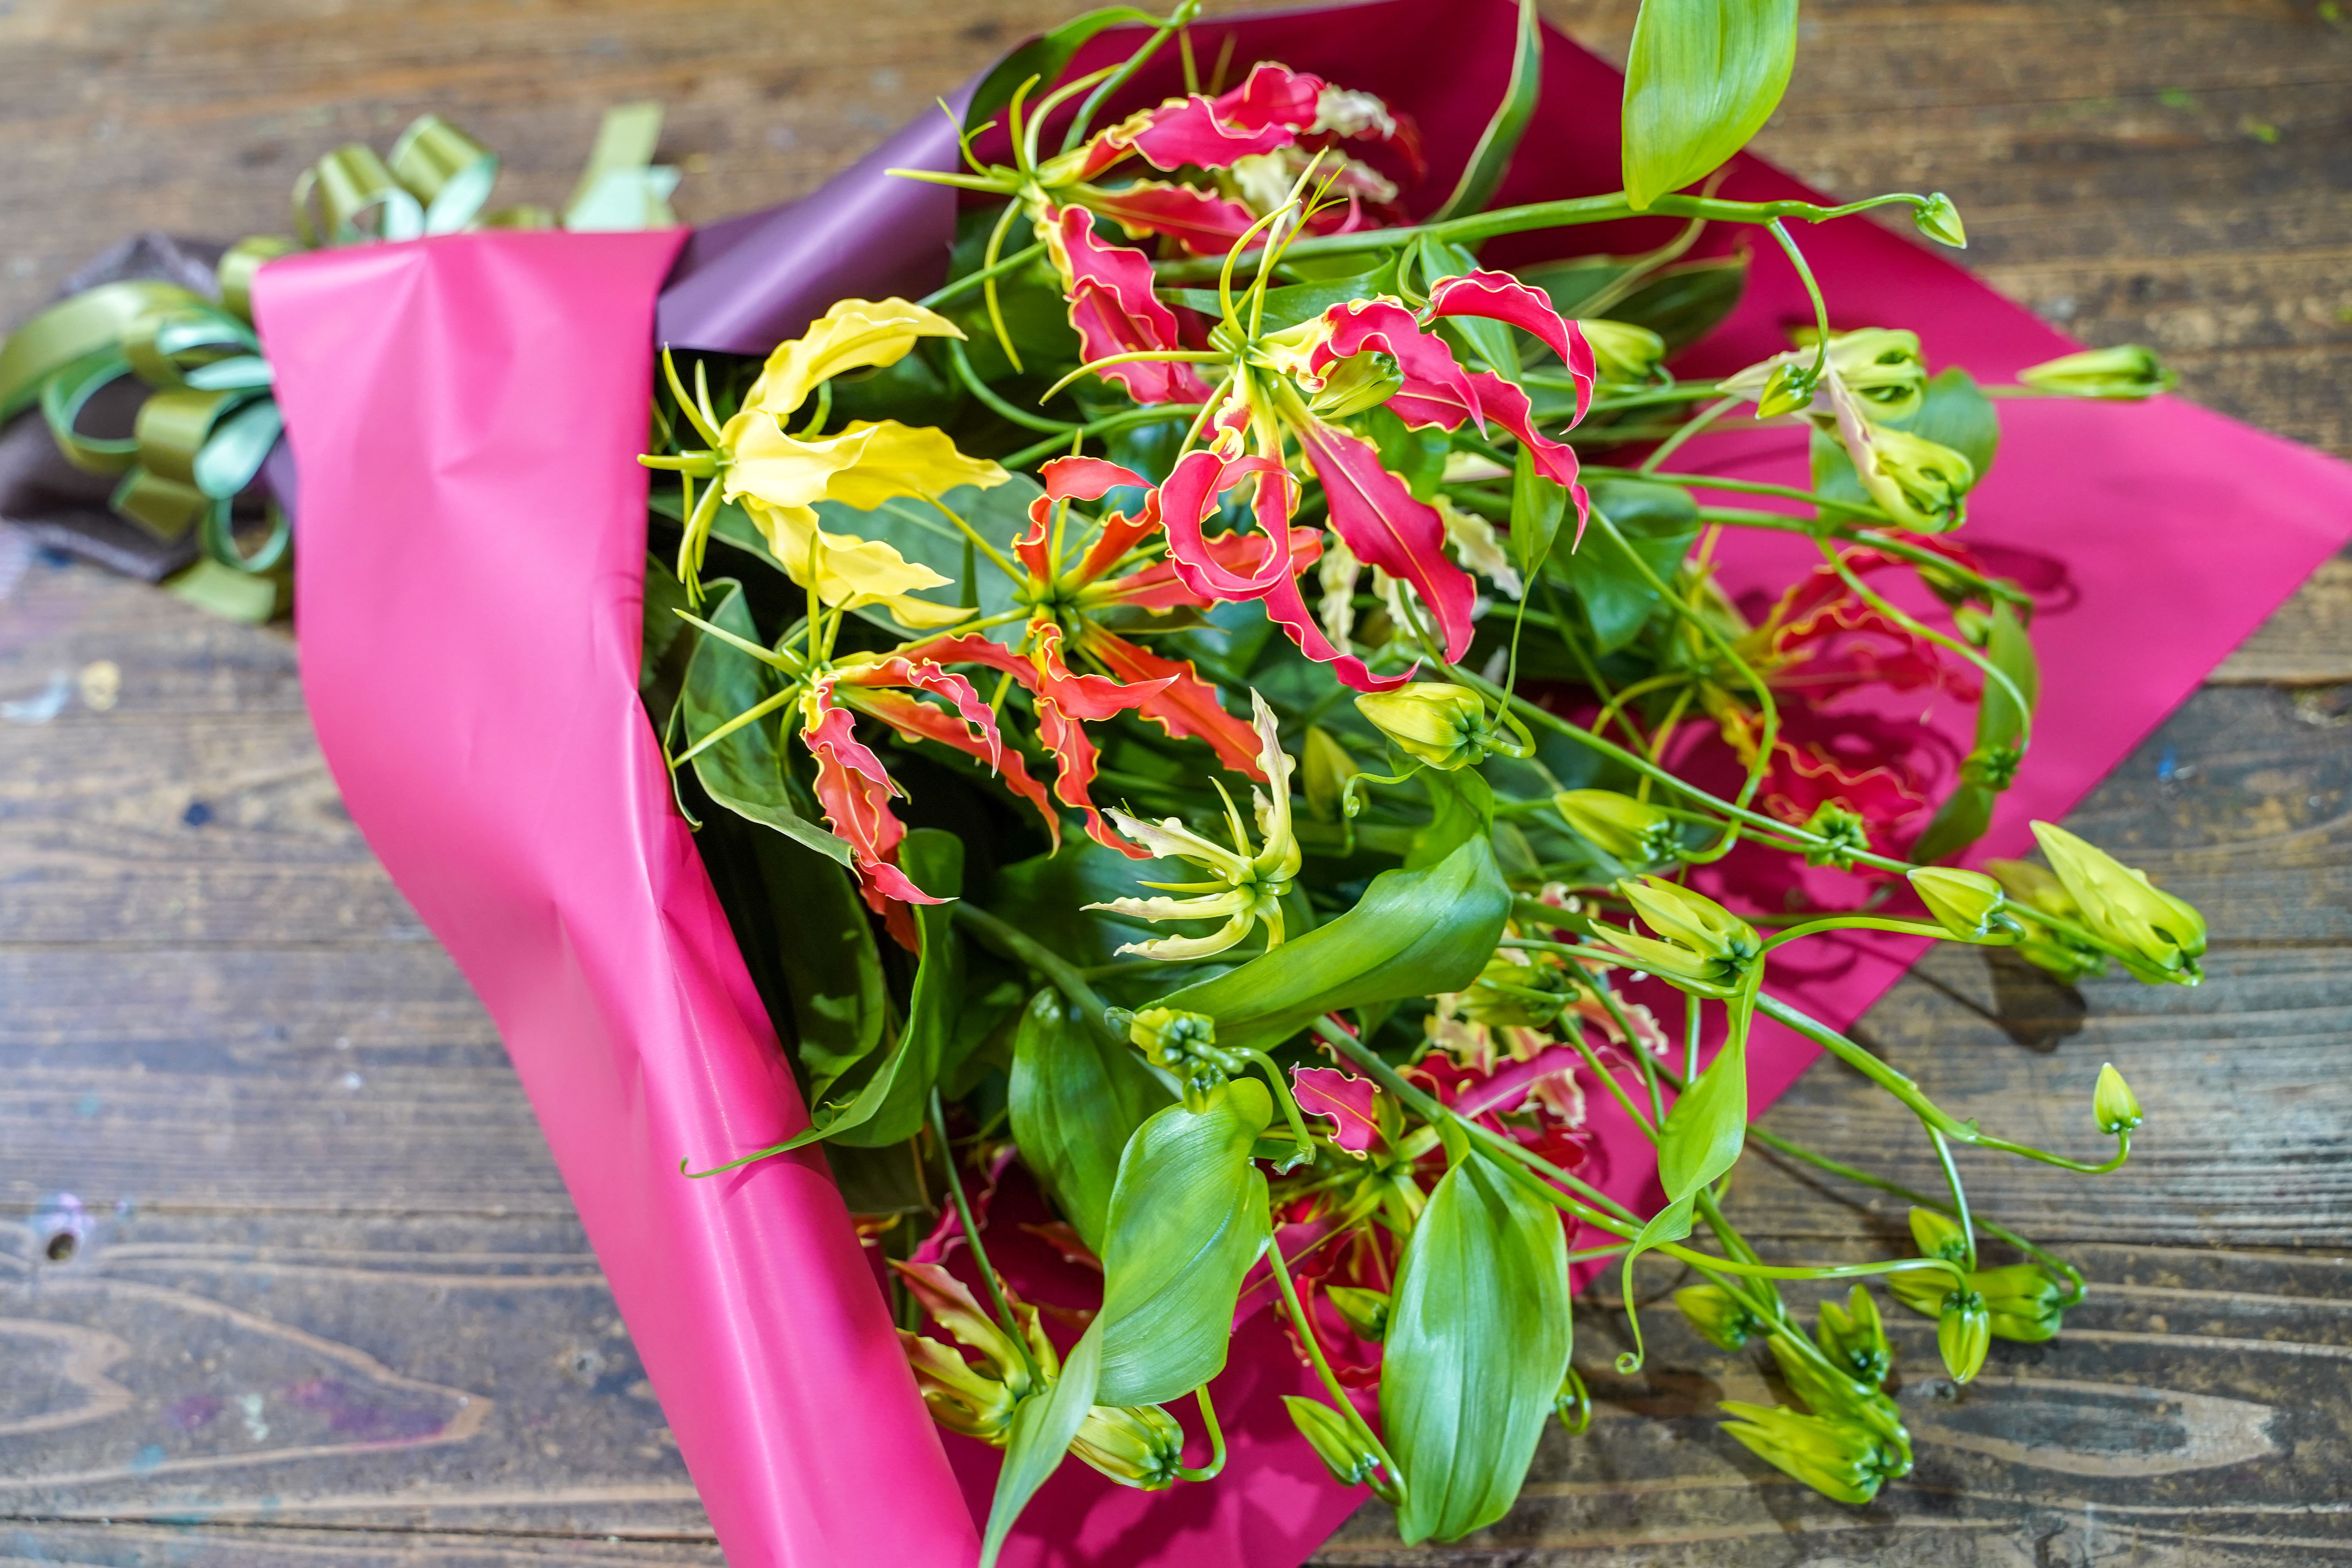 栄光 情熱の花 グロリオサの花束 H092 021 ふるさとパレット 東急グループのふるさと納税